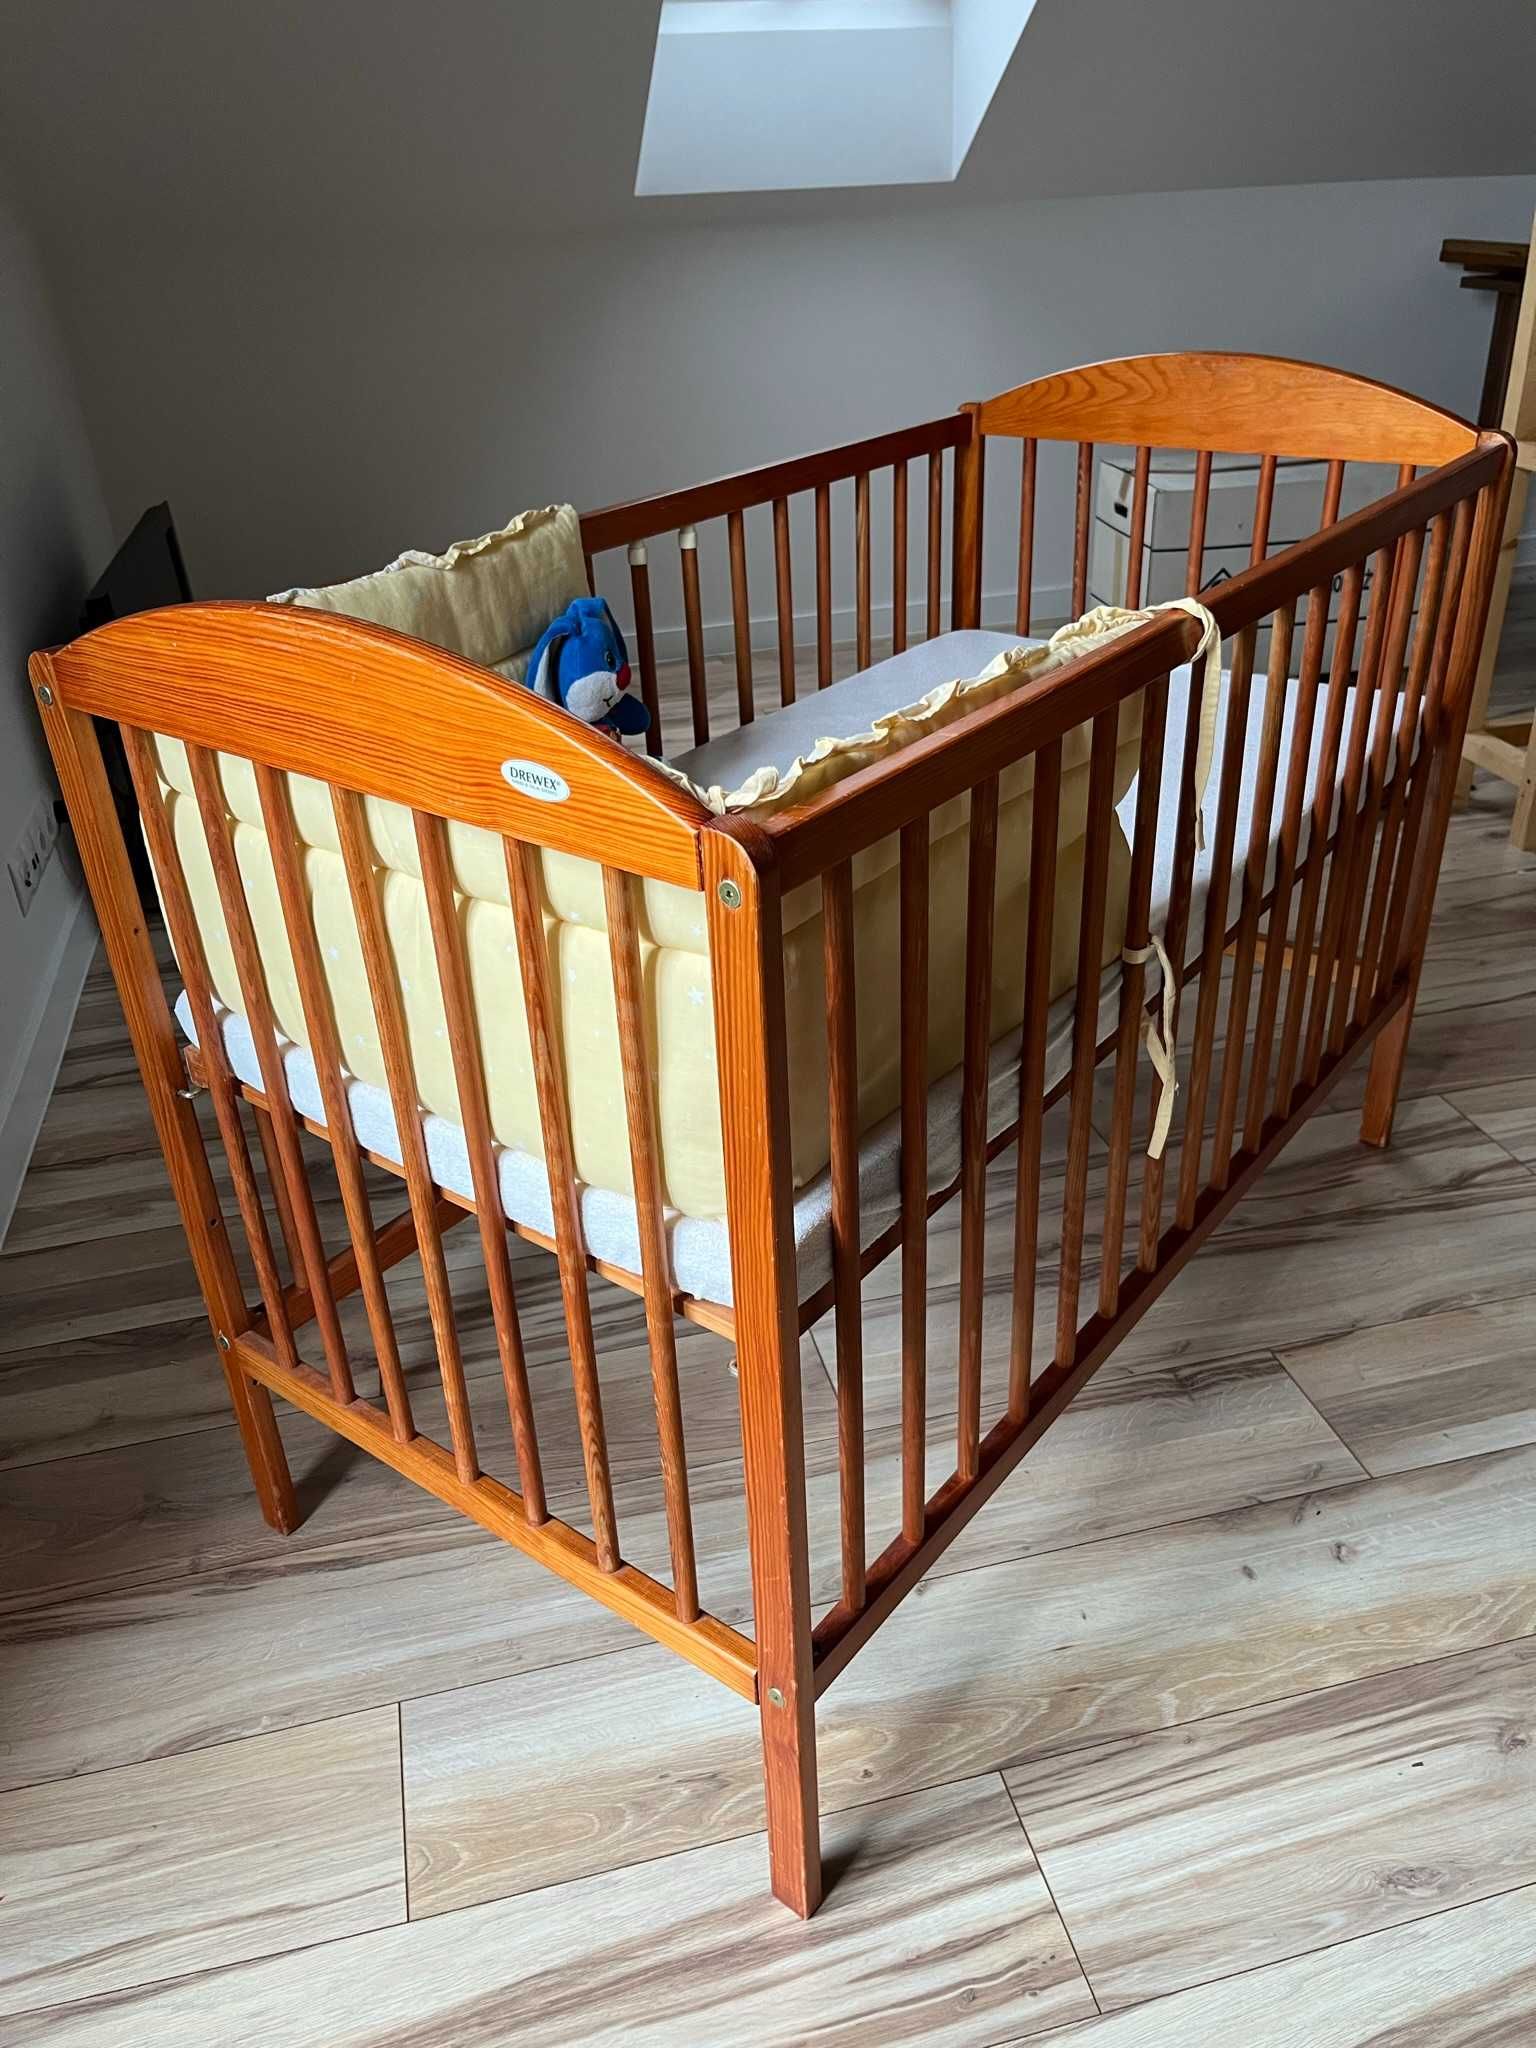 łóżeczko dla dziecka niemowlaka 120x60 drewno, nowy nieużywany materac